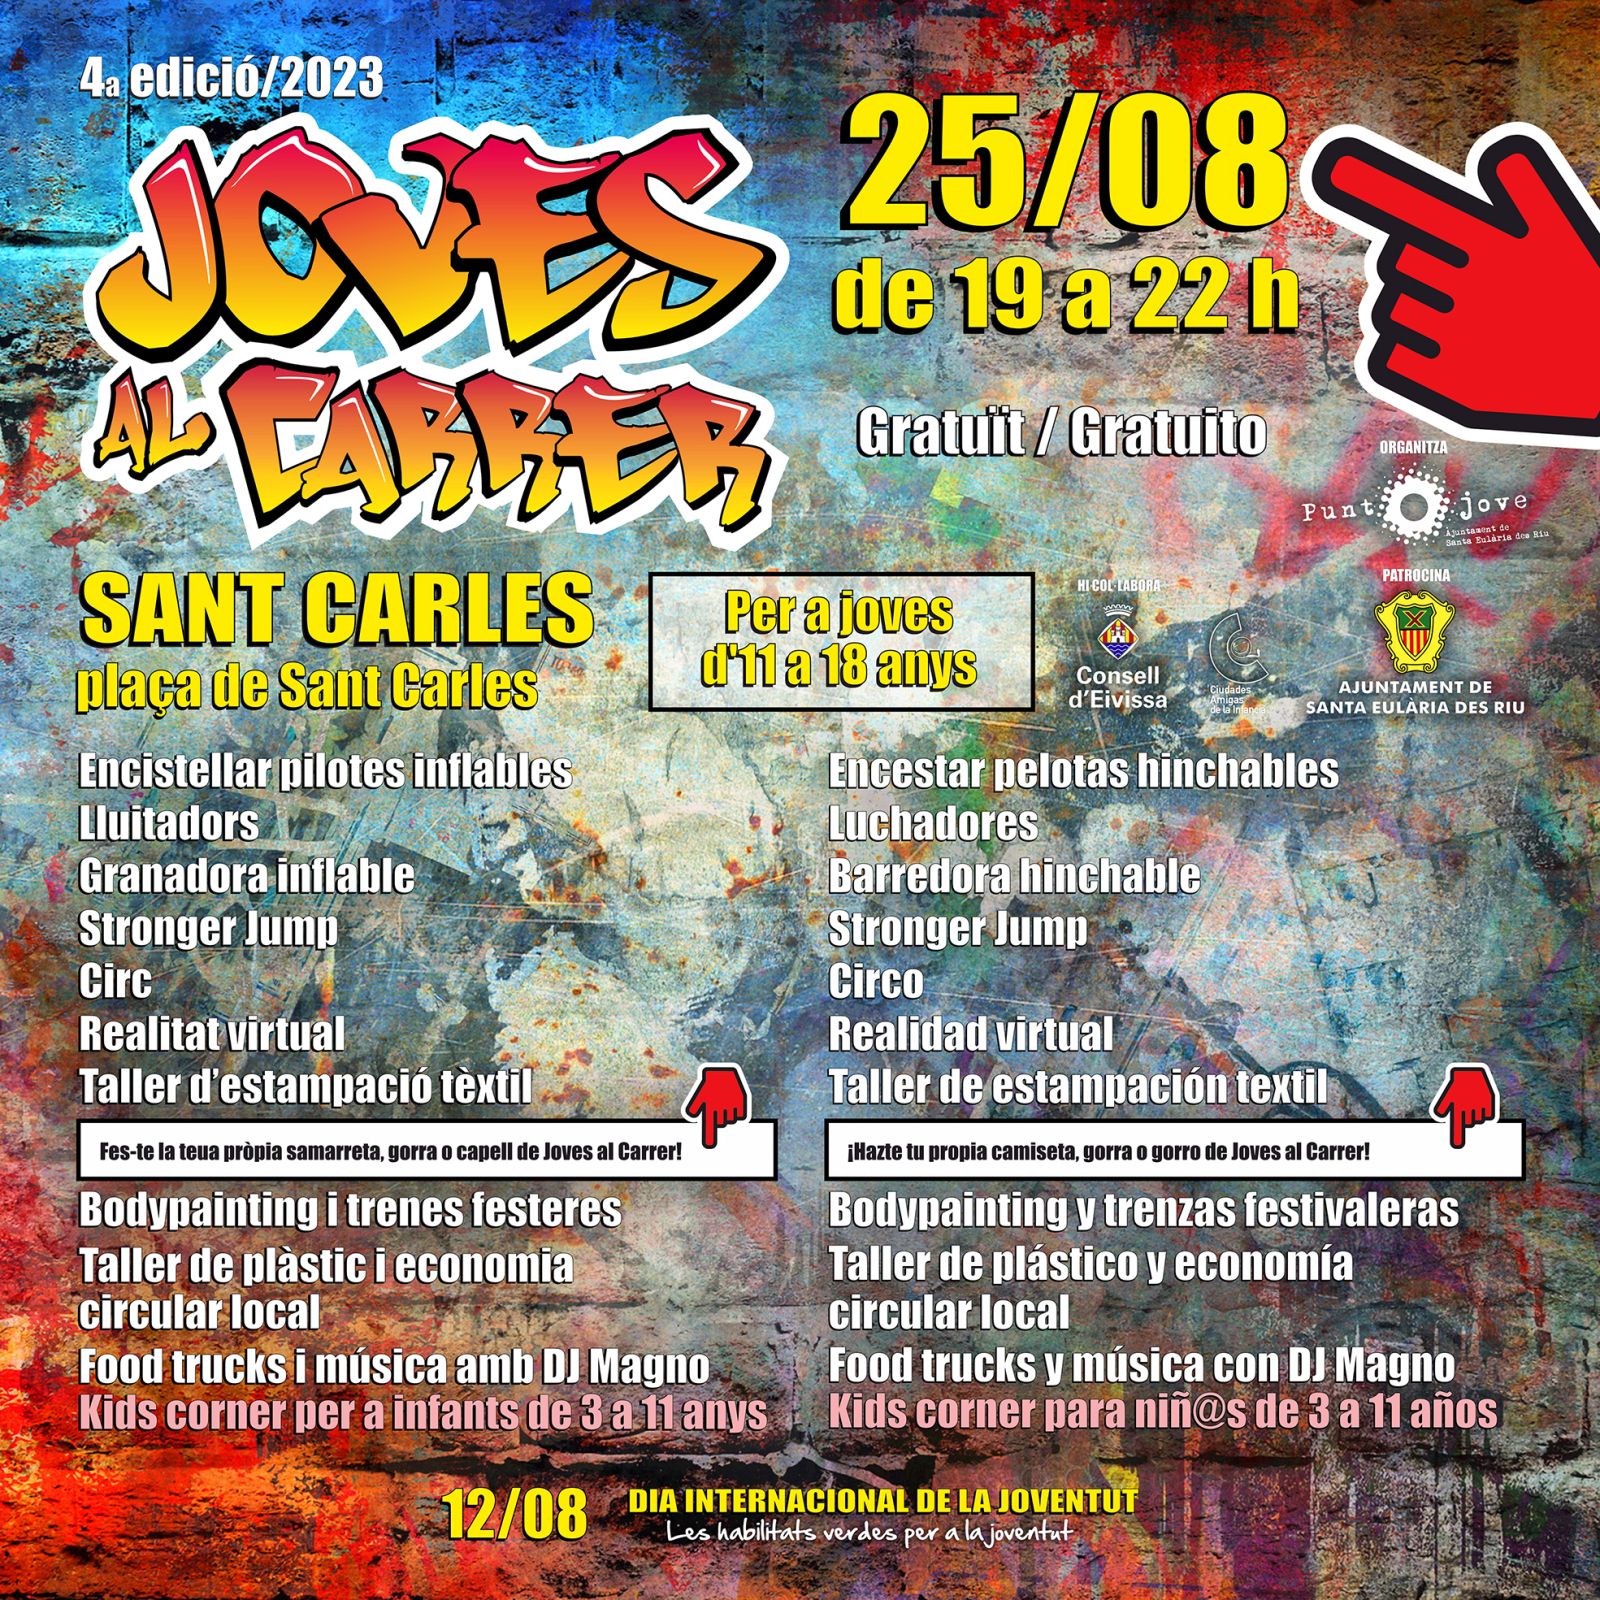 Talleres de circo, realidad virtual y taller de estampación textil este viernes en Sant Carles gracias al programa Joves al Carrer